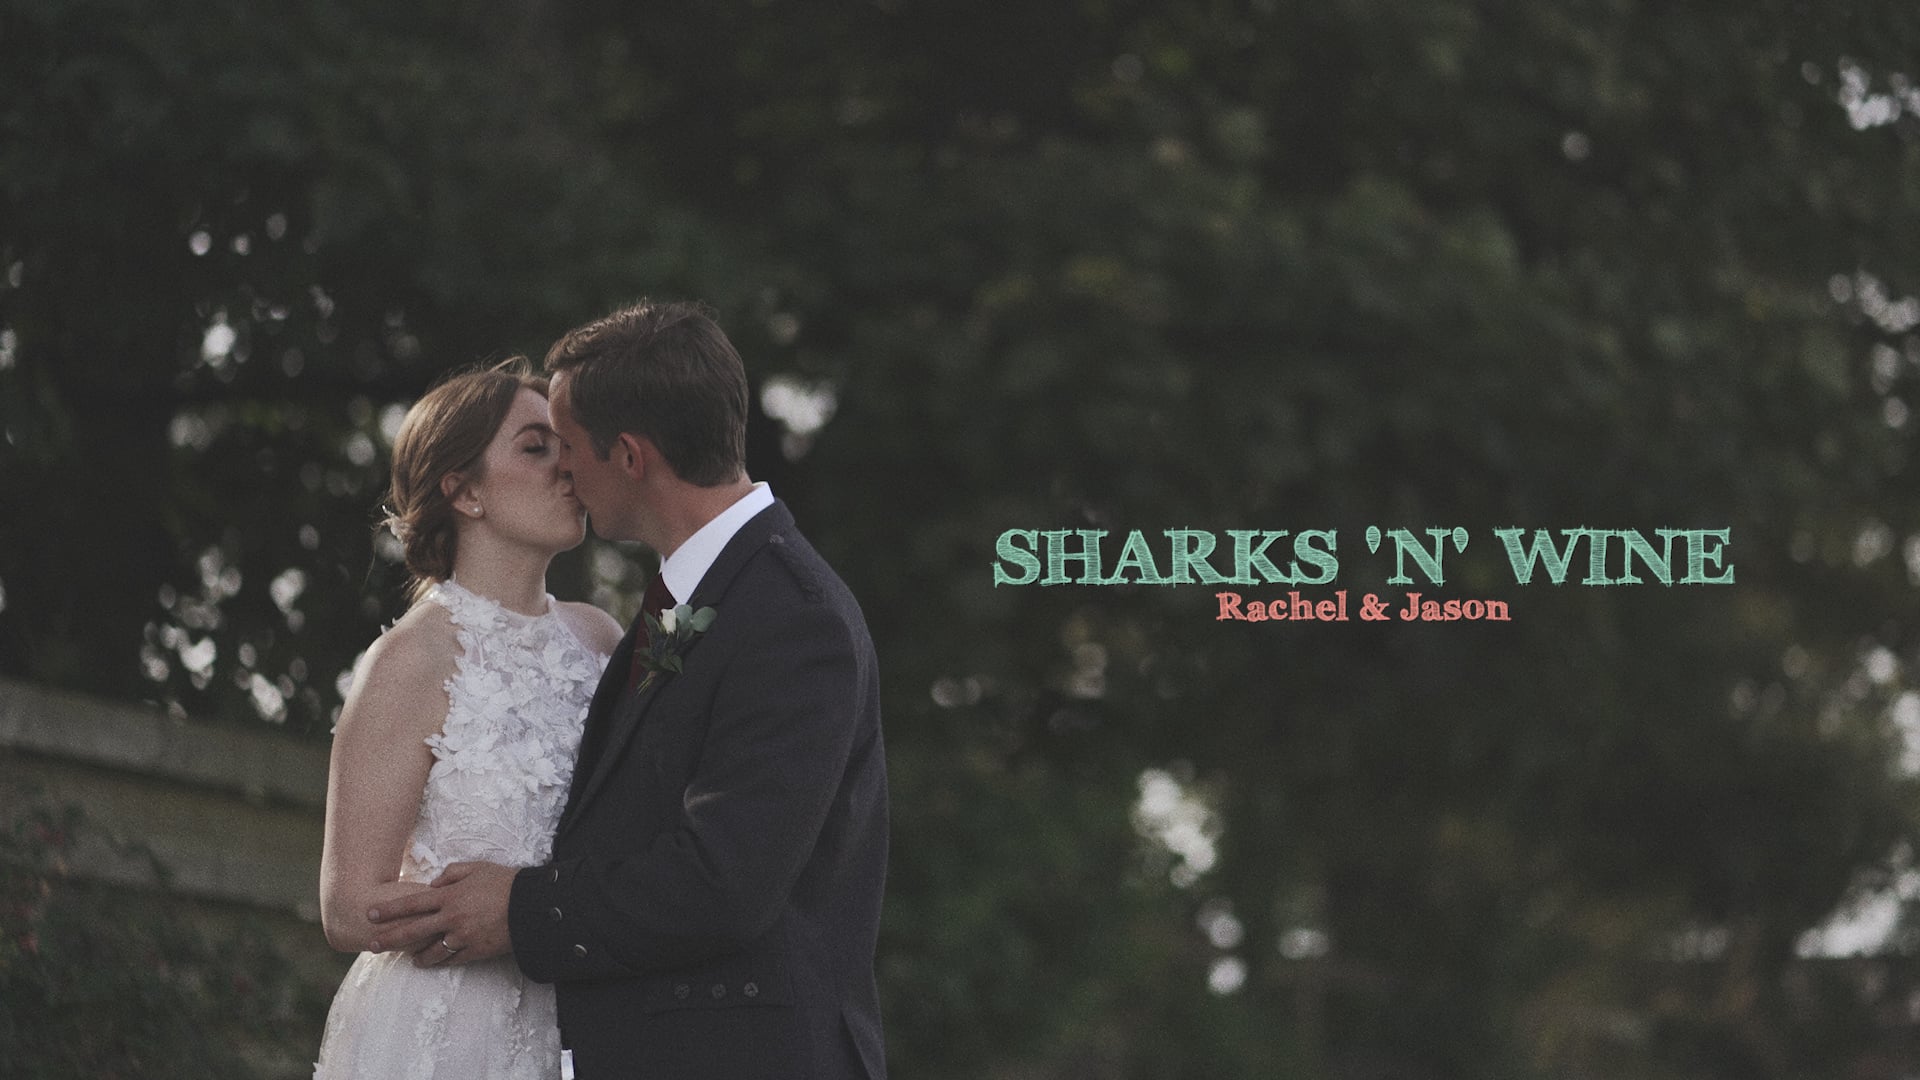 Sharks 'n' Wine by Rachel and Jason